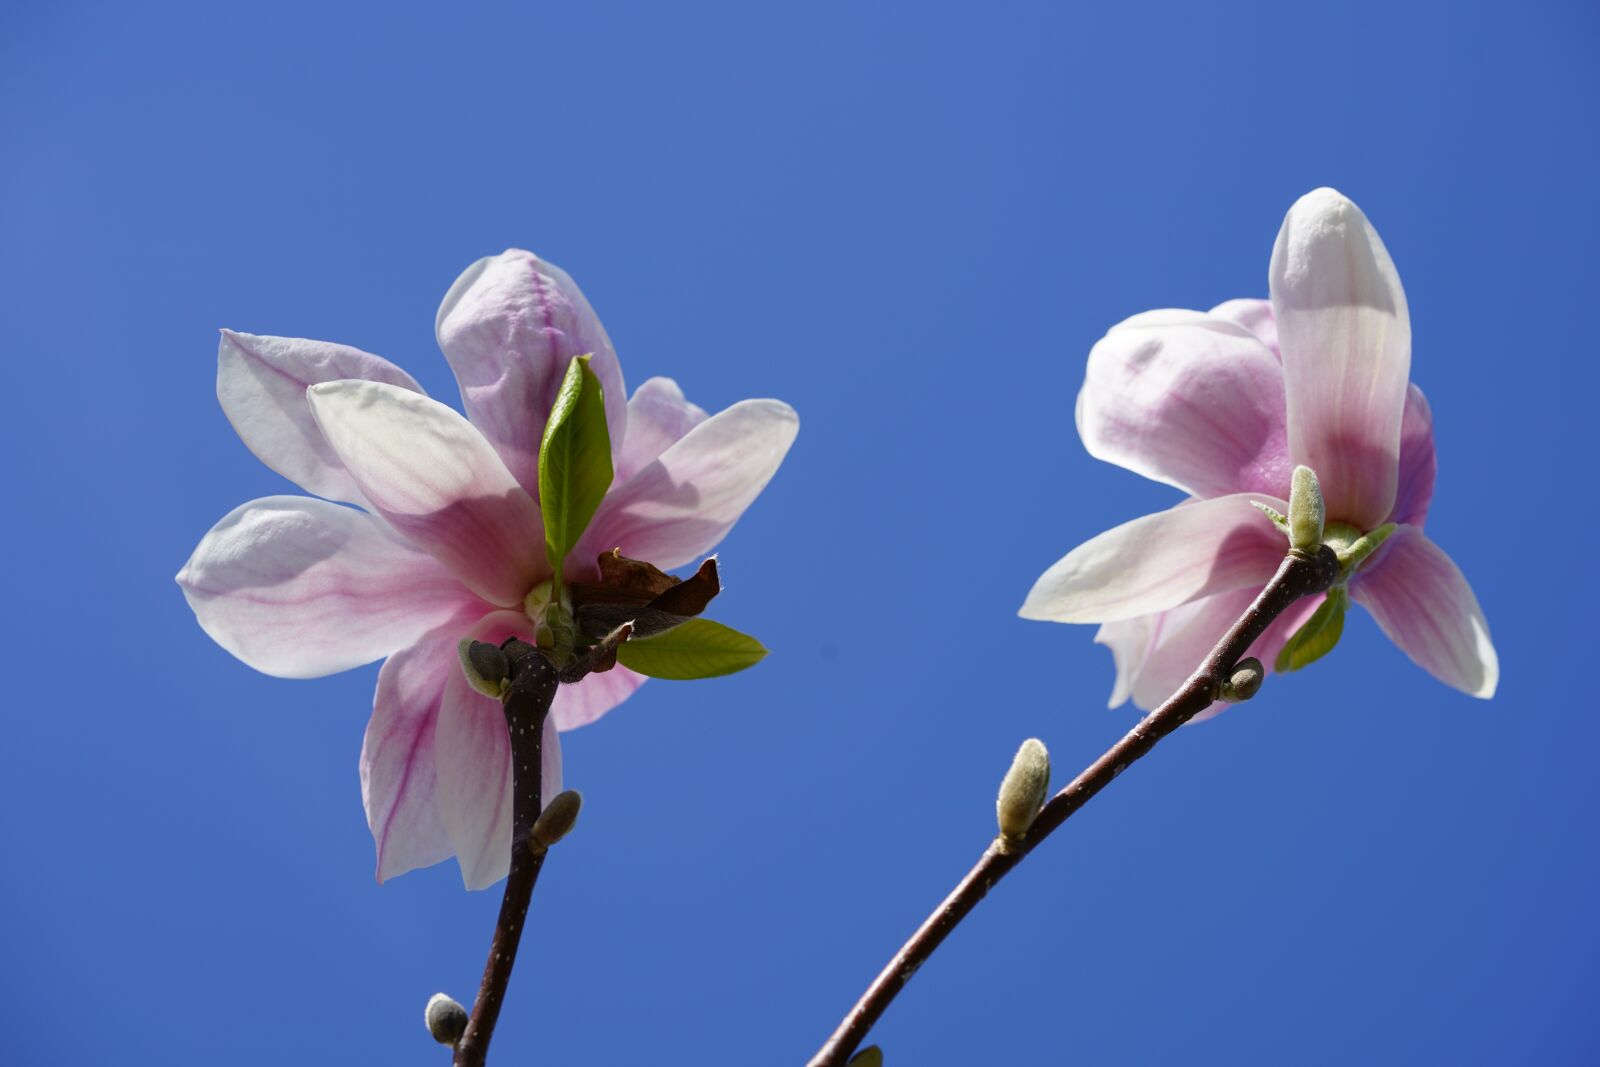 Sony a7R II sample photo. Tulip magnolia, magnolia, magnolia photography